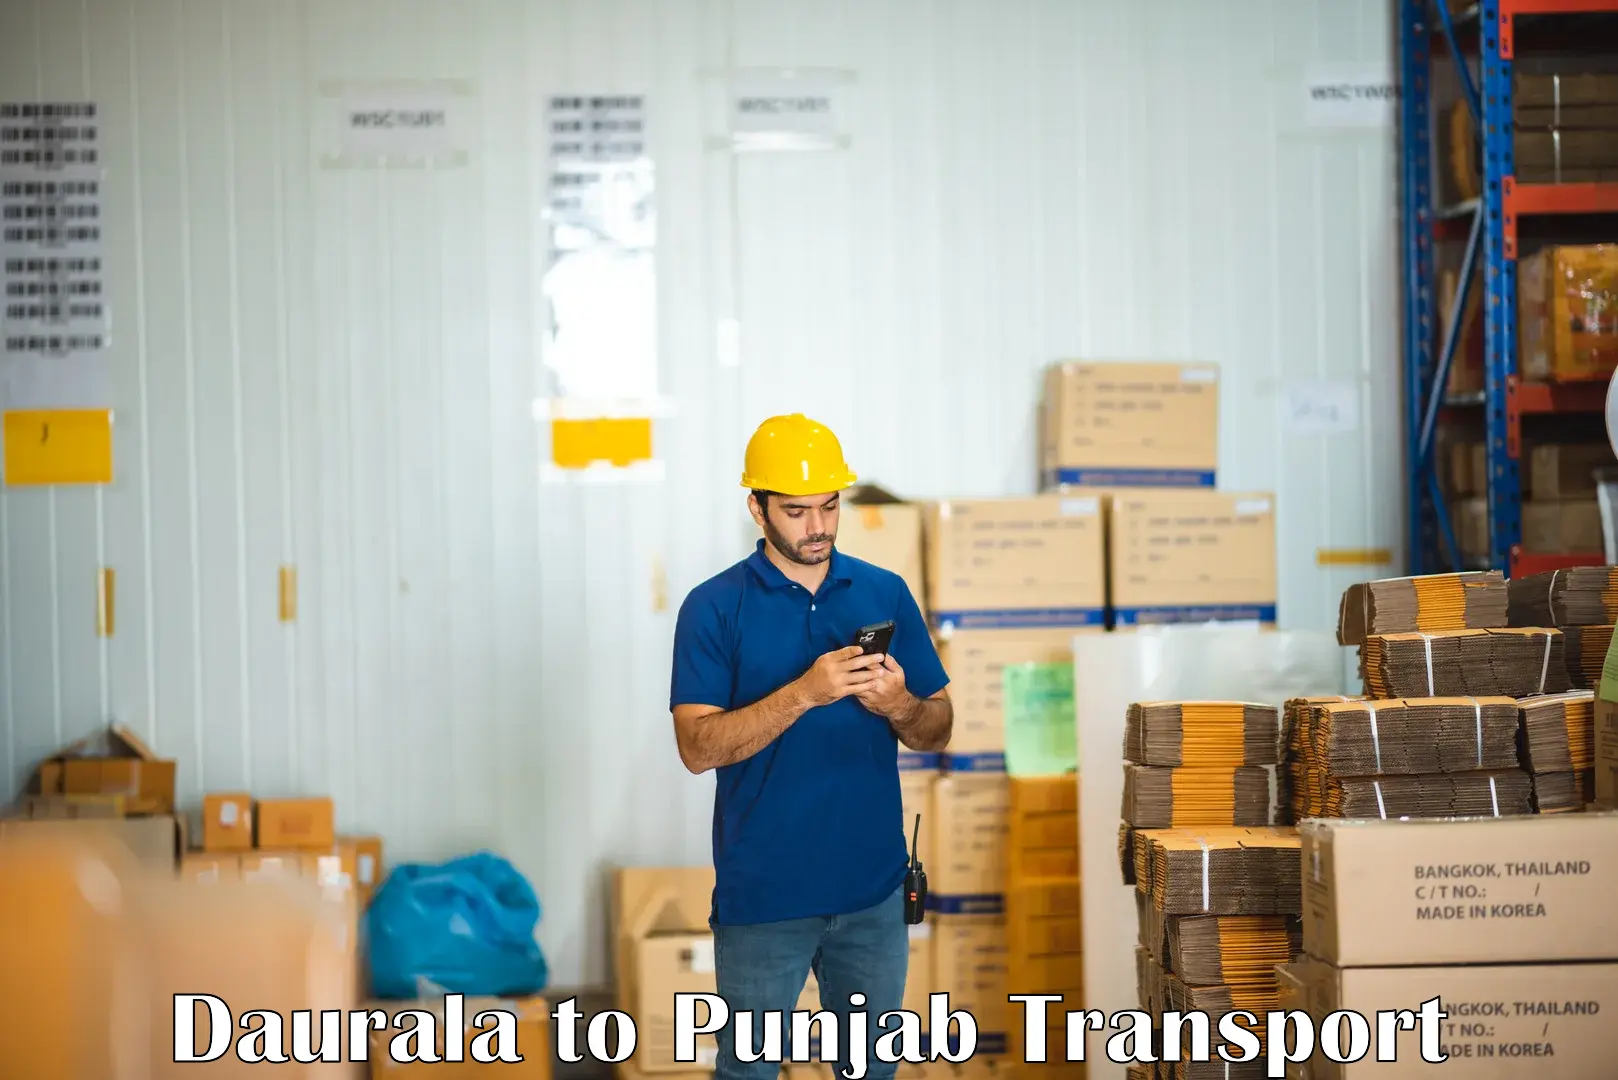 Furniture transport service Daurala to Punjab